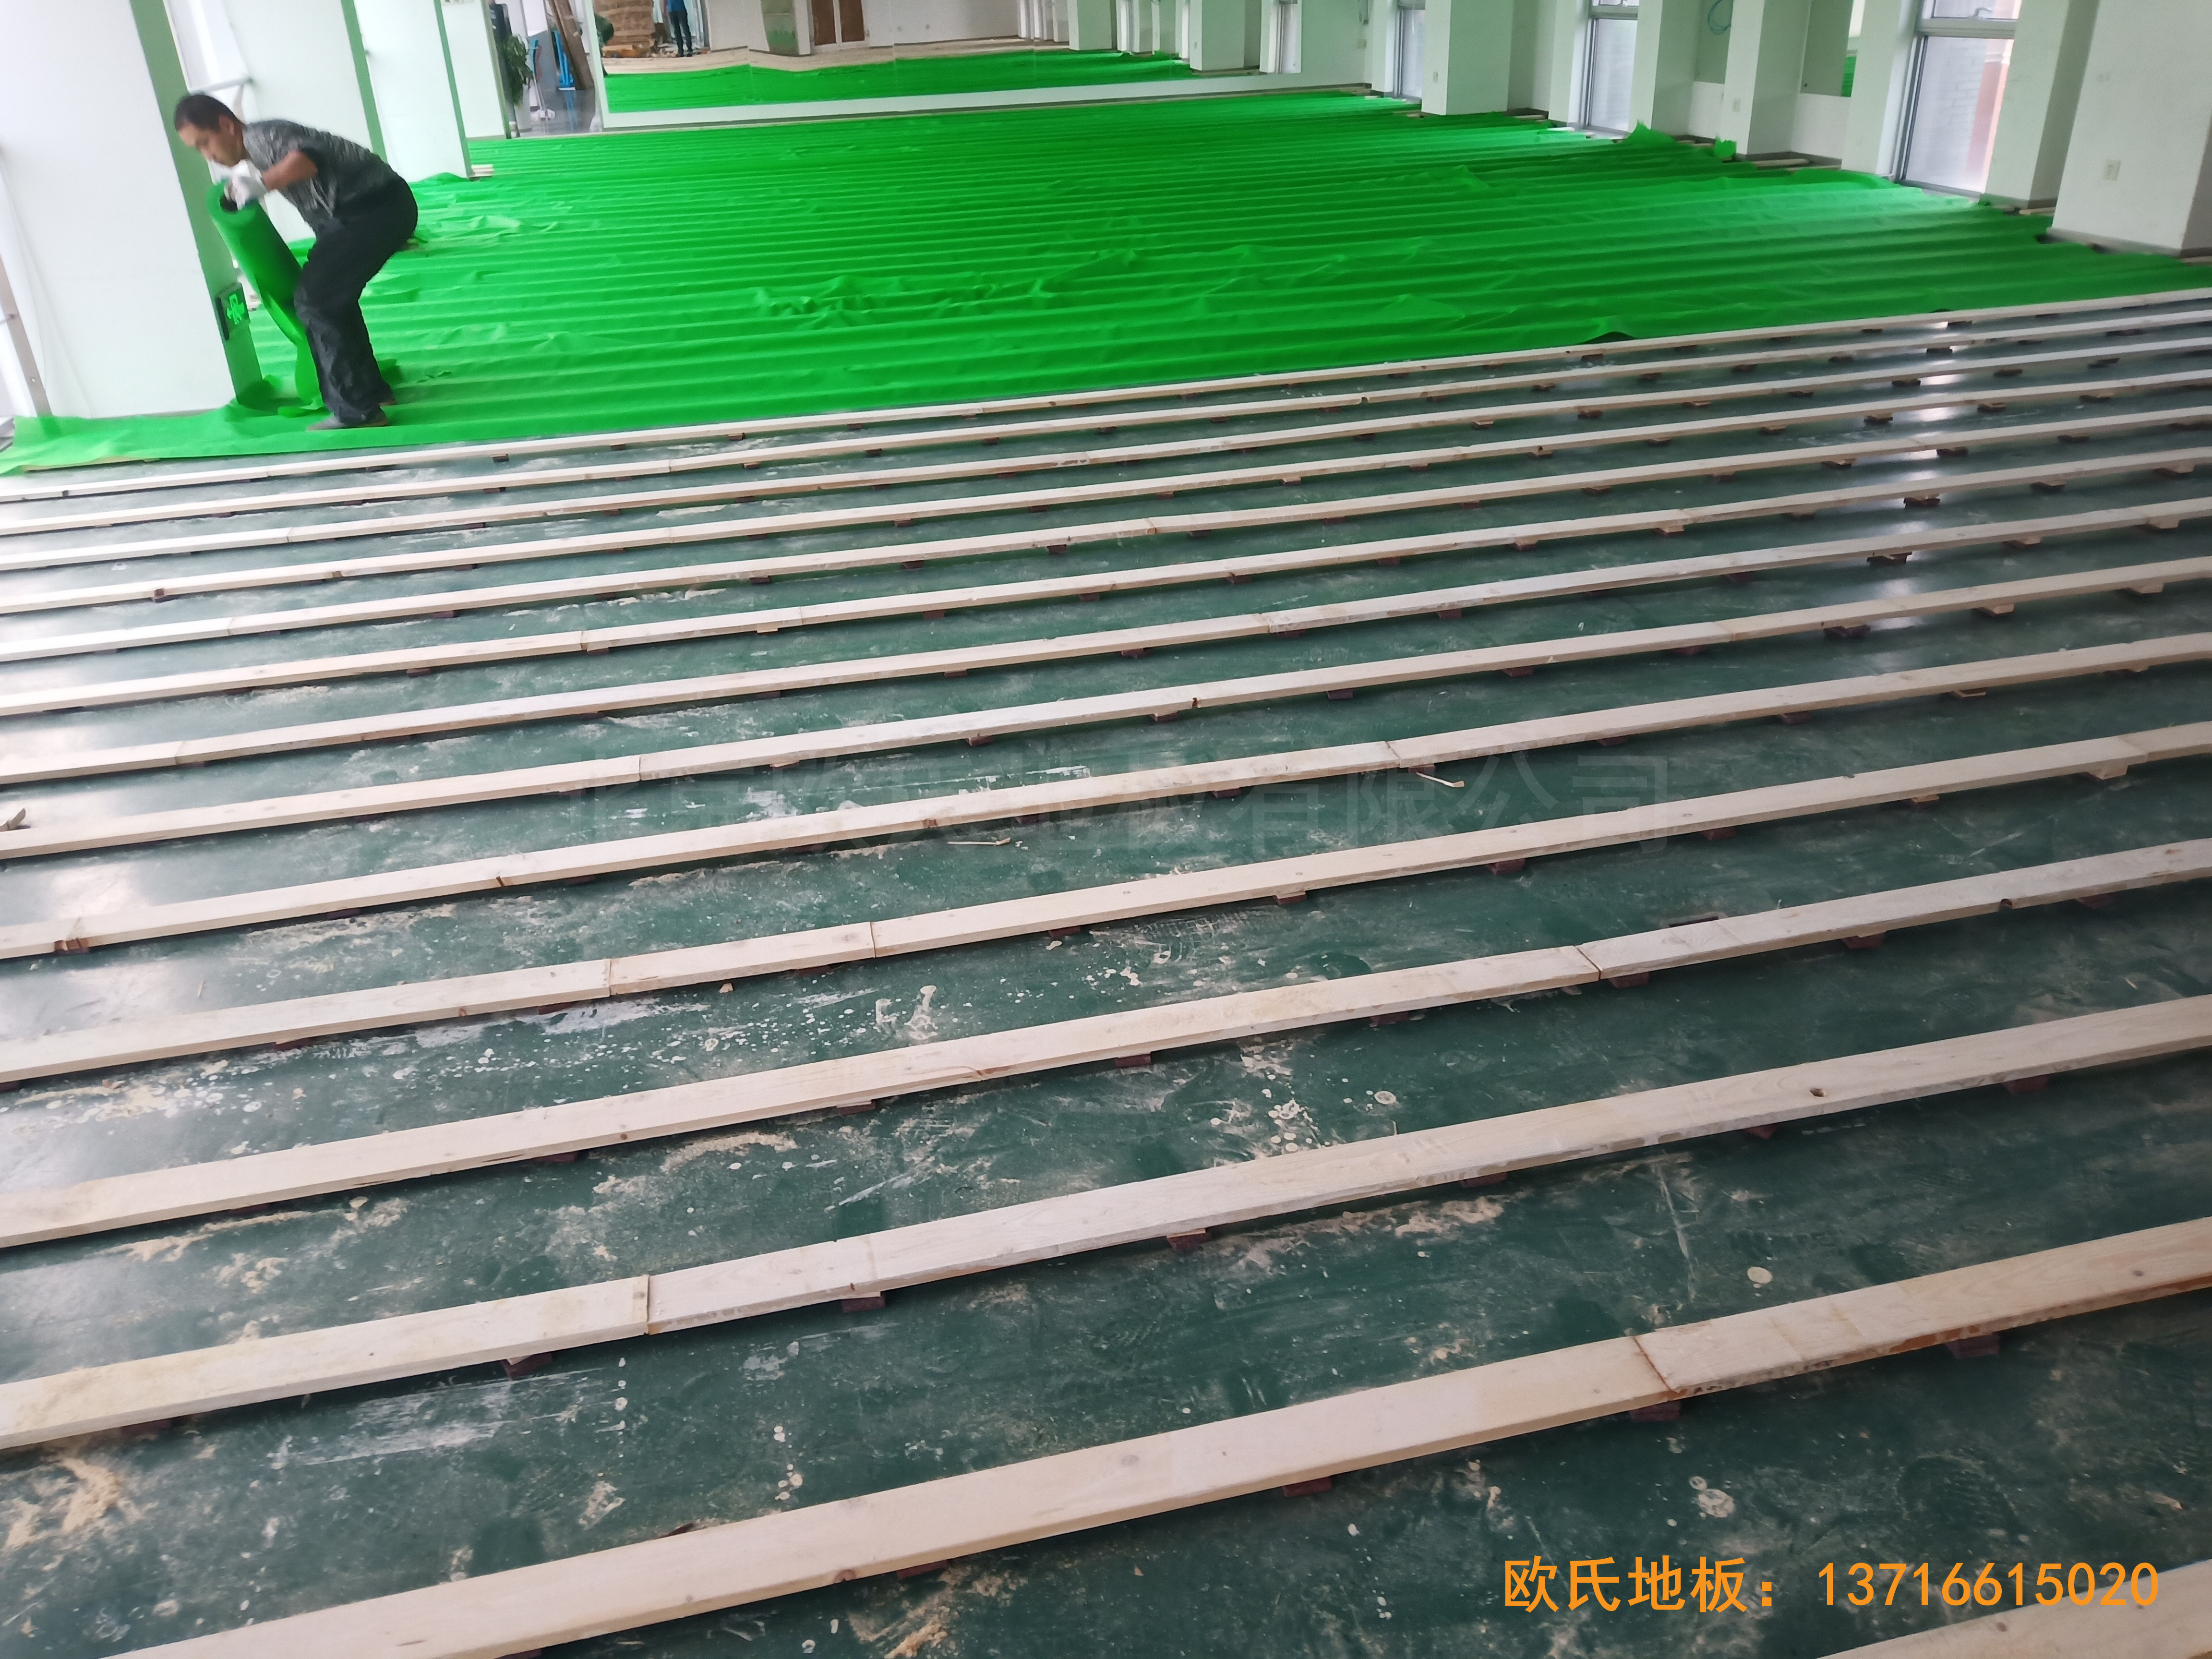 中国科学院技术研究所运动馆体育木地板铺装案例1